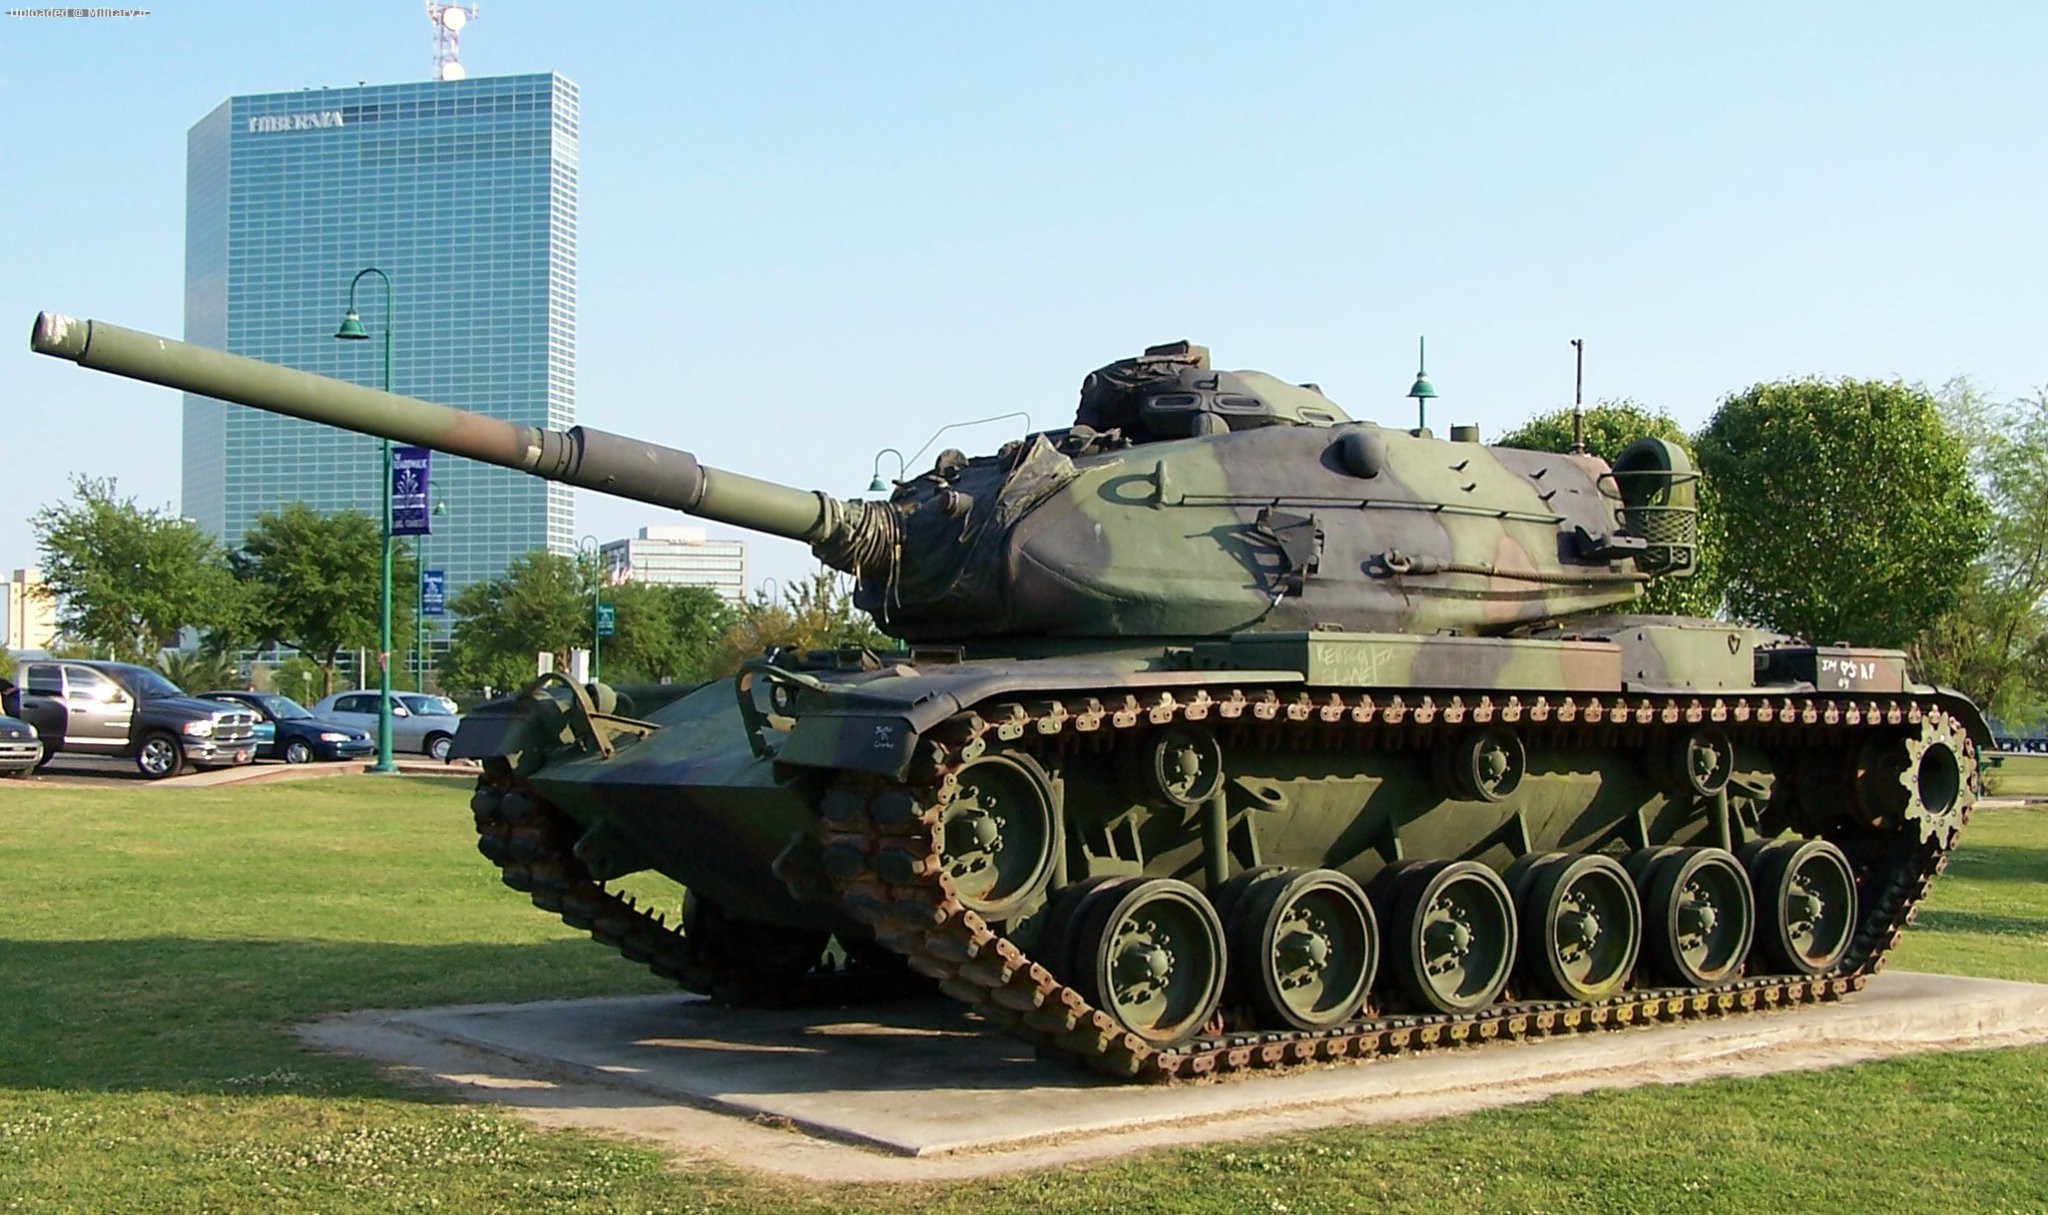 American_M60A3_tank_Lake_Charles2C_Louis